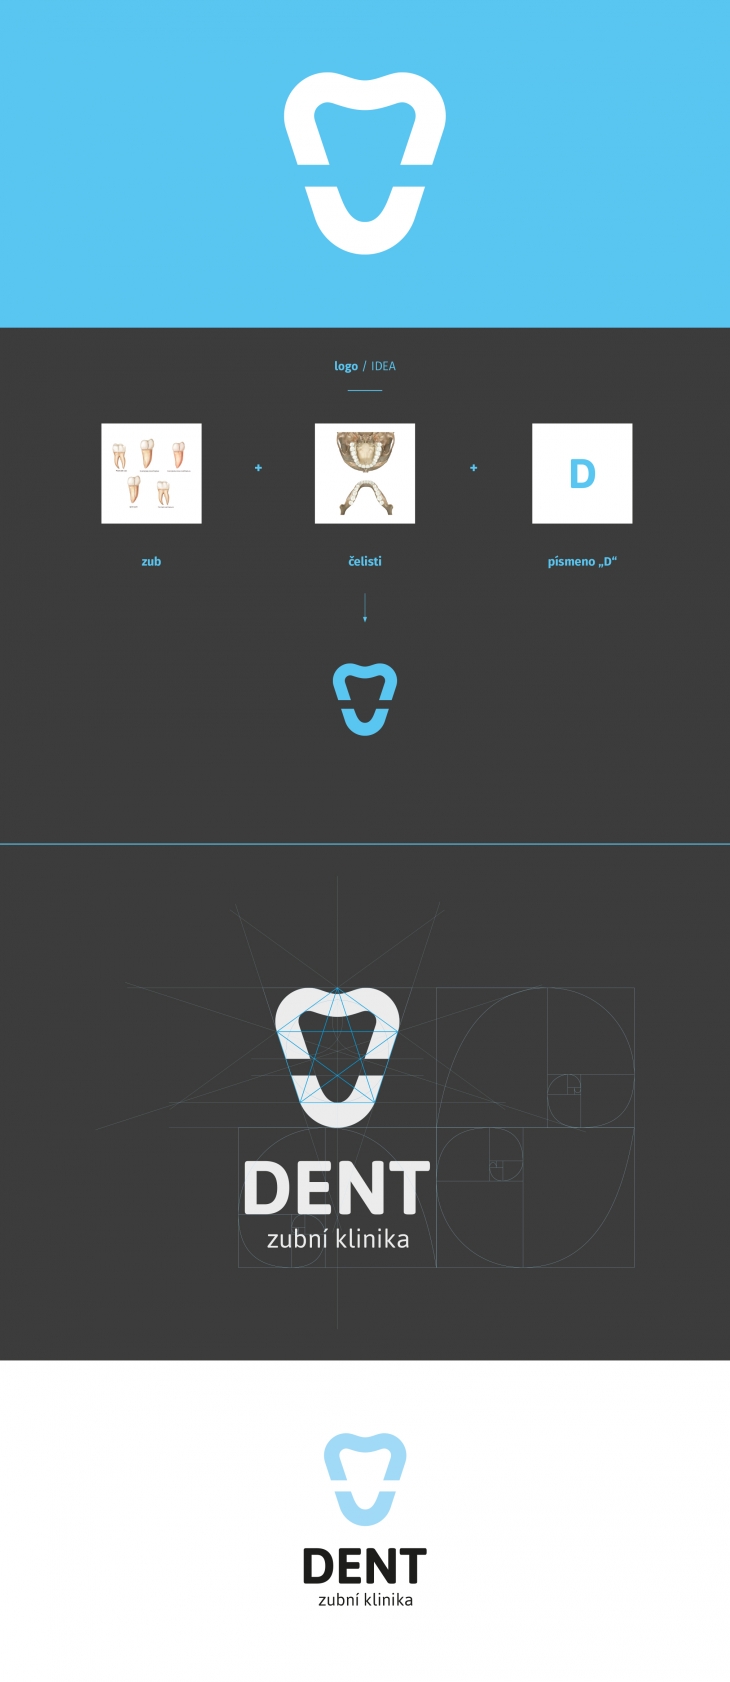 Projekt: Dent